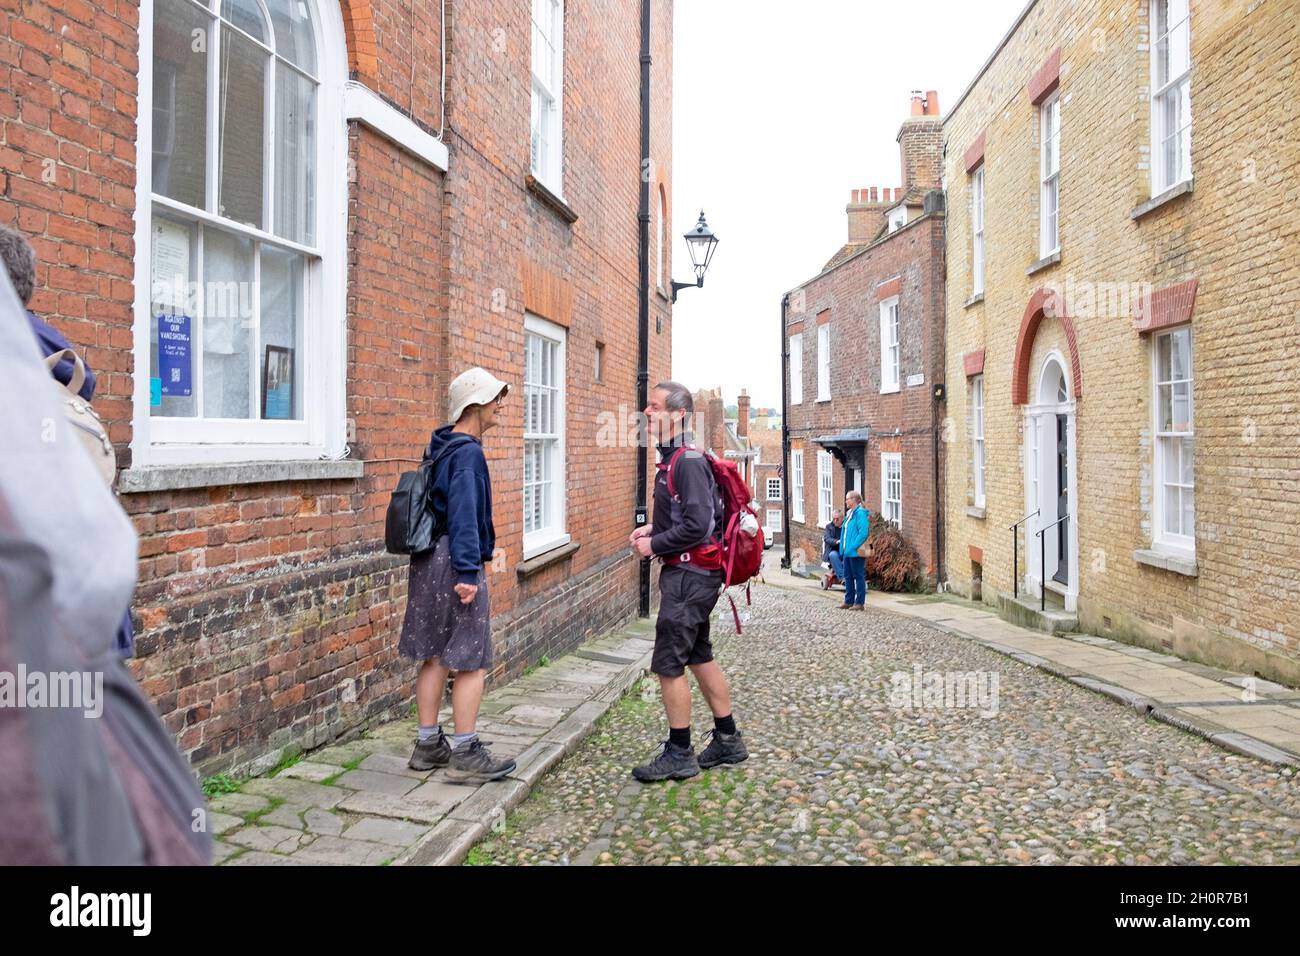 Two older people couple walkers hikers wearing backpacks rucksacks standing talking in street Rye East Sussex England Great Britain UK KATHY DEWITT Stock Photo